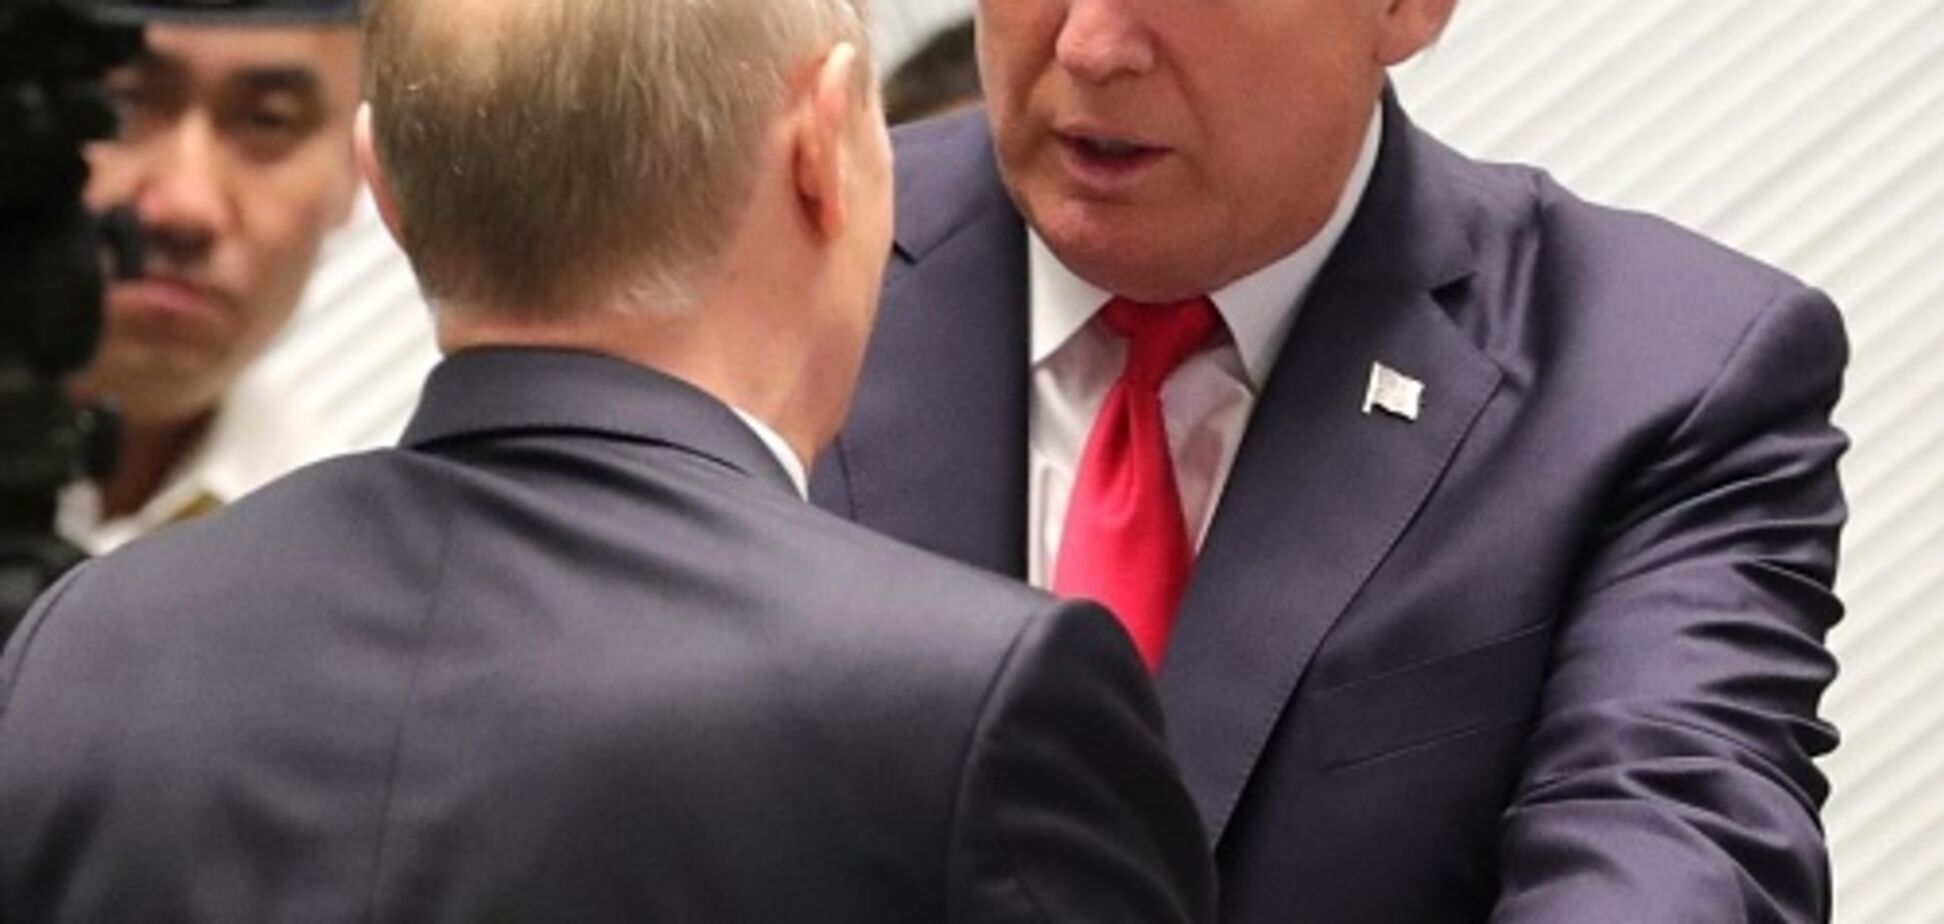 'Не поздравлять': всплыл скандальный подтекст разговора Трампа и Путина